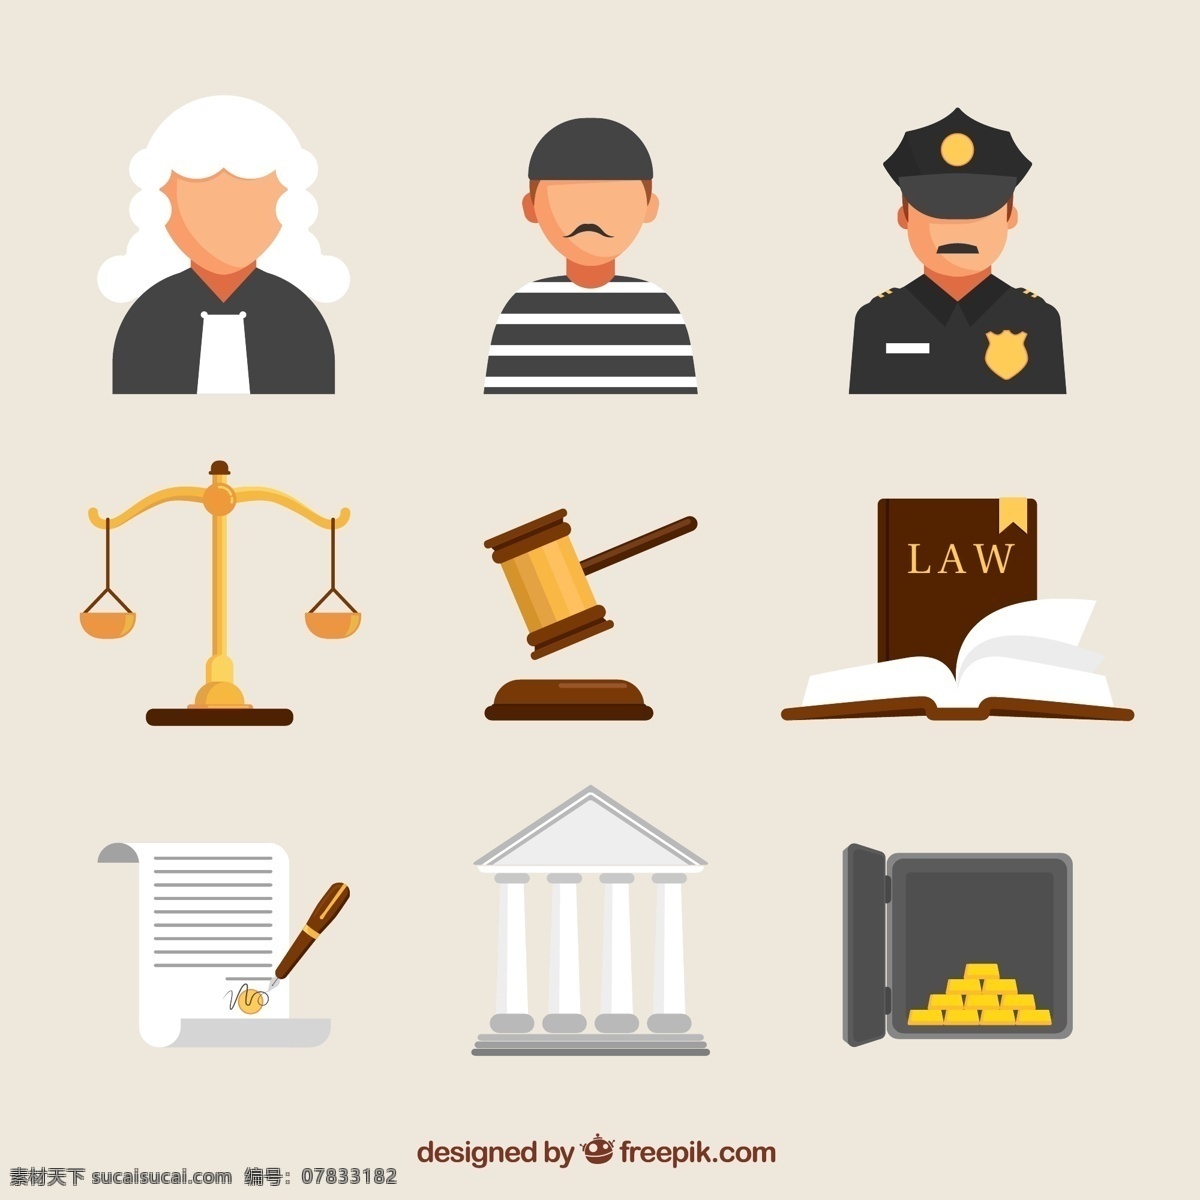 创意法律元素 创意 法律 元素 法官 天枰 法槌 书籍 法规 人物 人物图库 职业人物